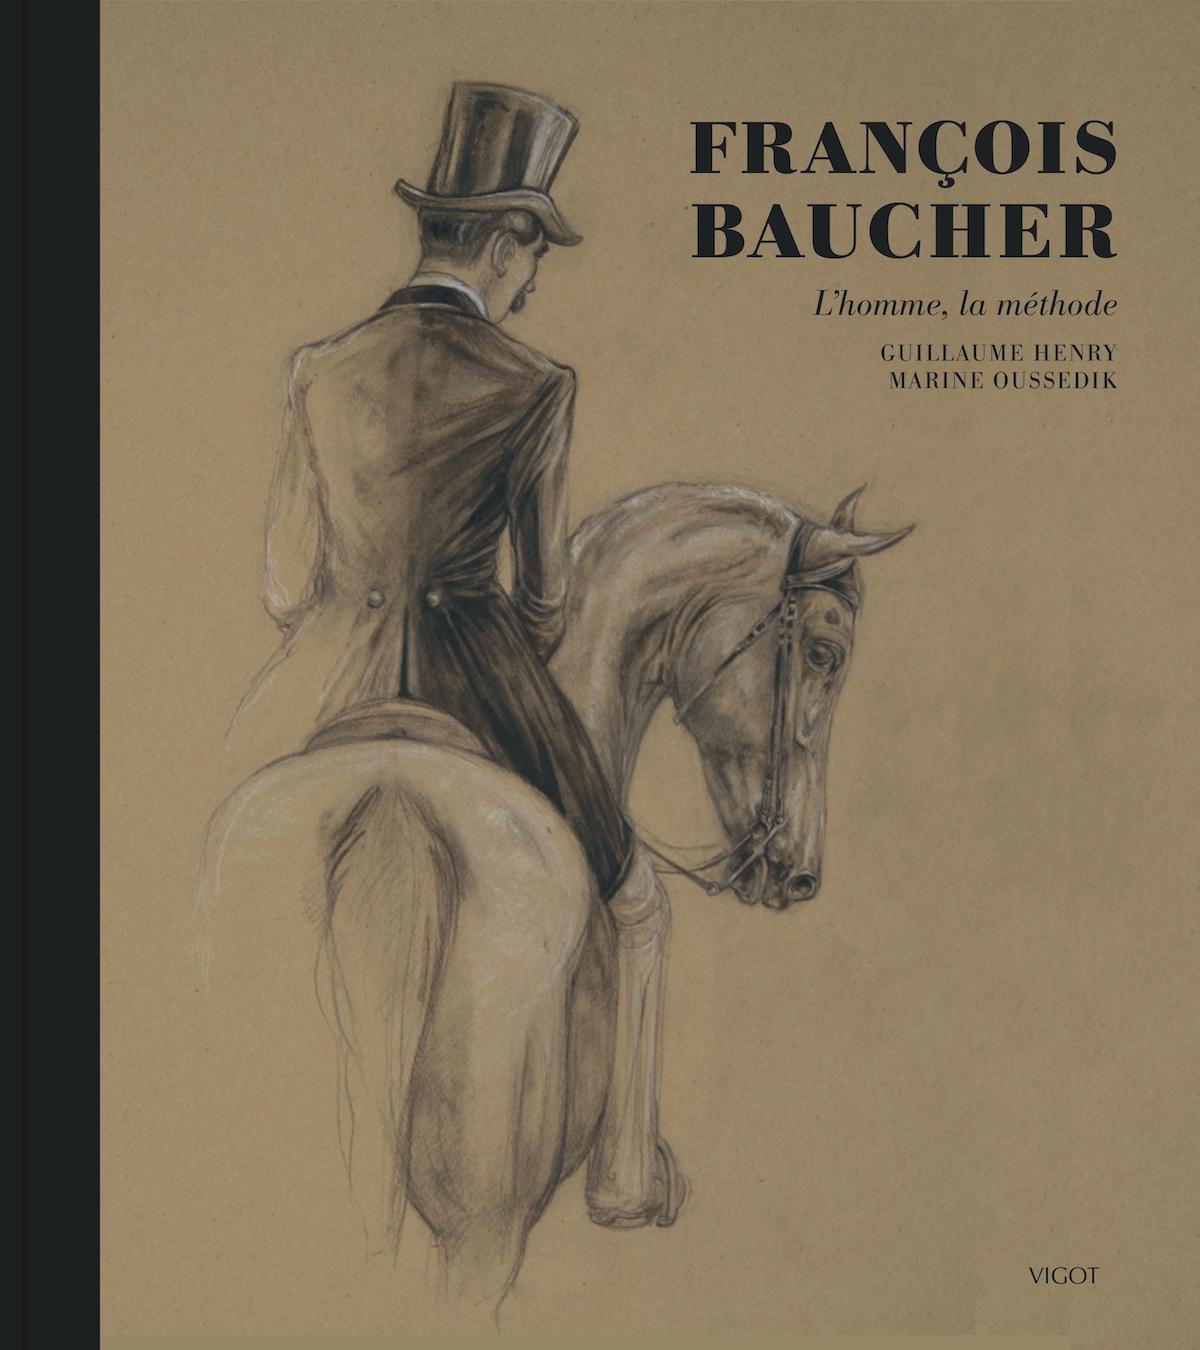 “François Baucher, l’homme, la méthode”, long de 160 pages, est à retrouver aux éditions Vigot, au prix de 39 euros.